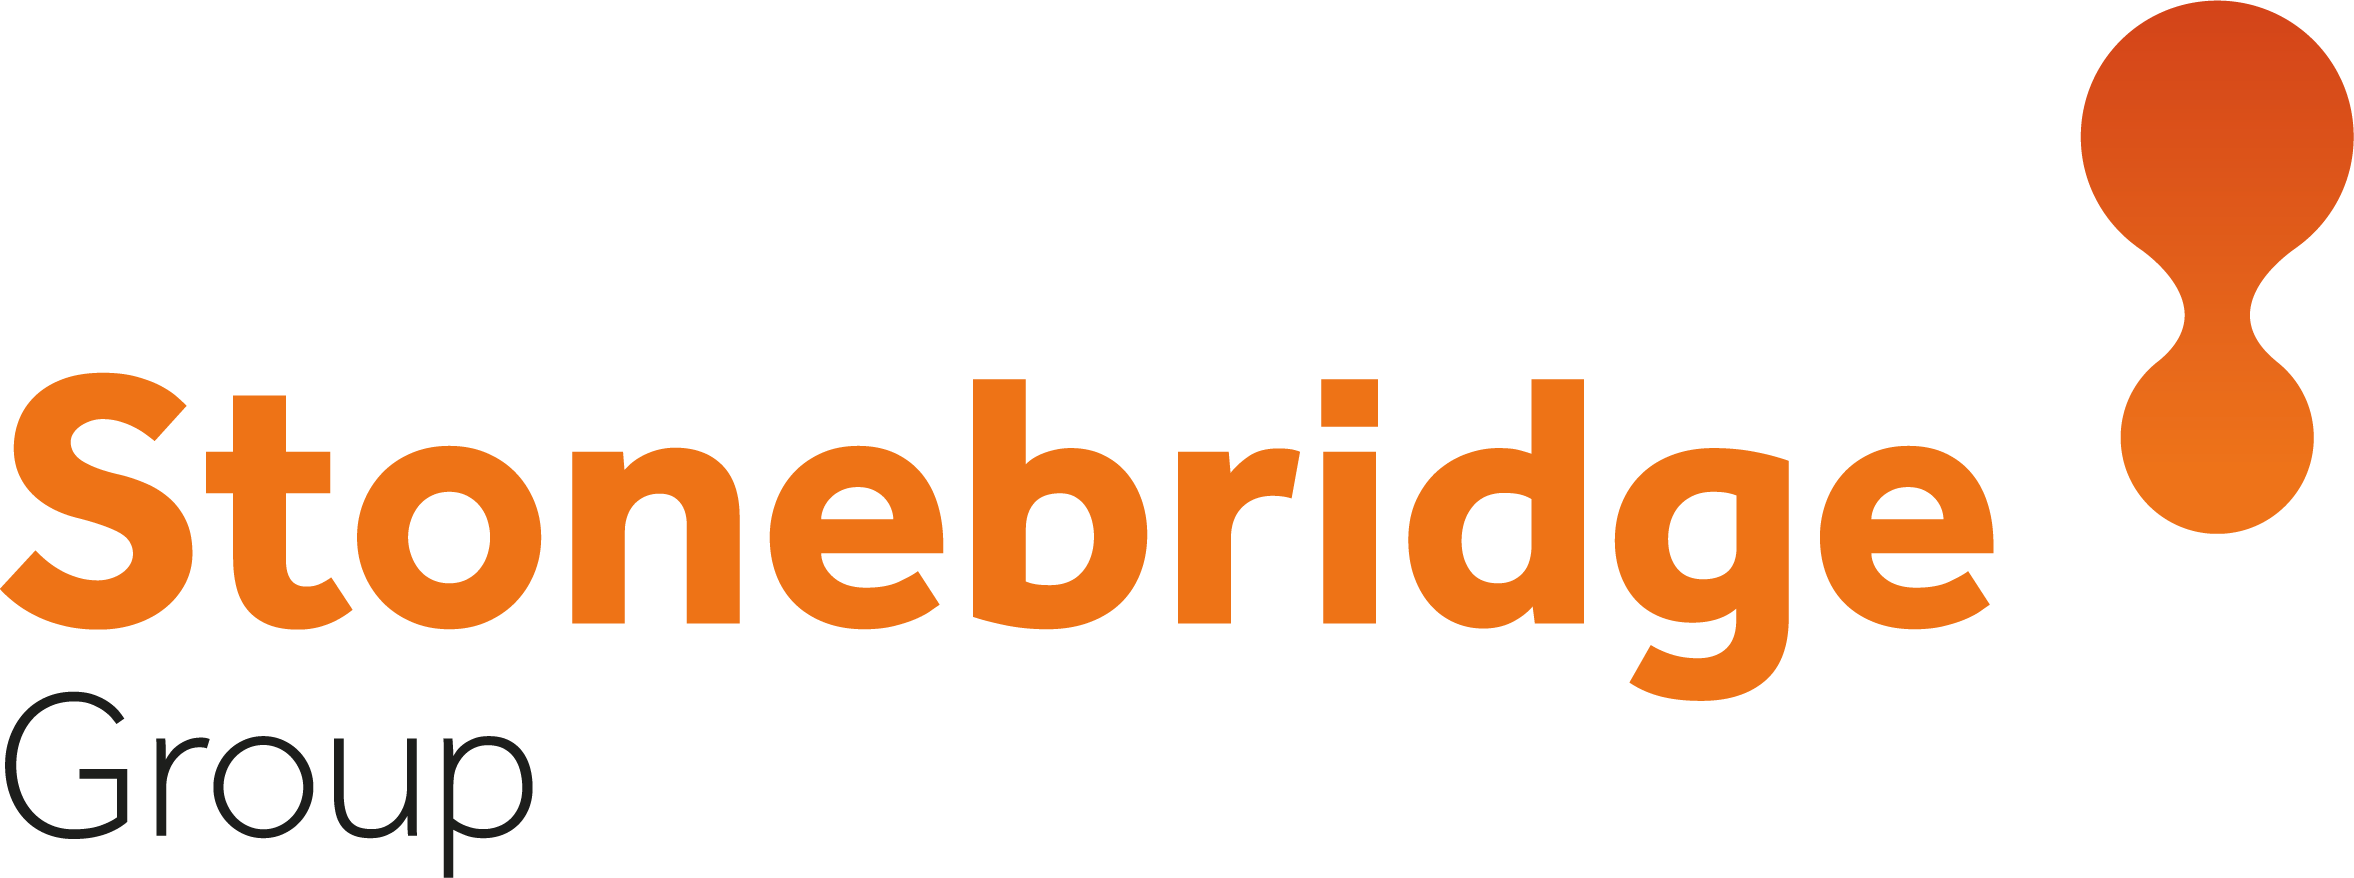 stonebridge-logo